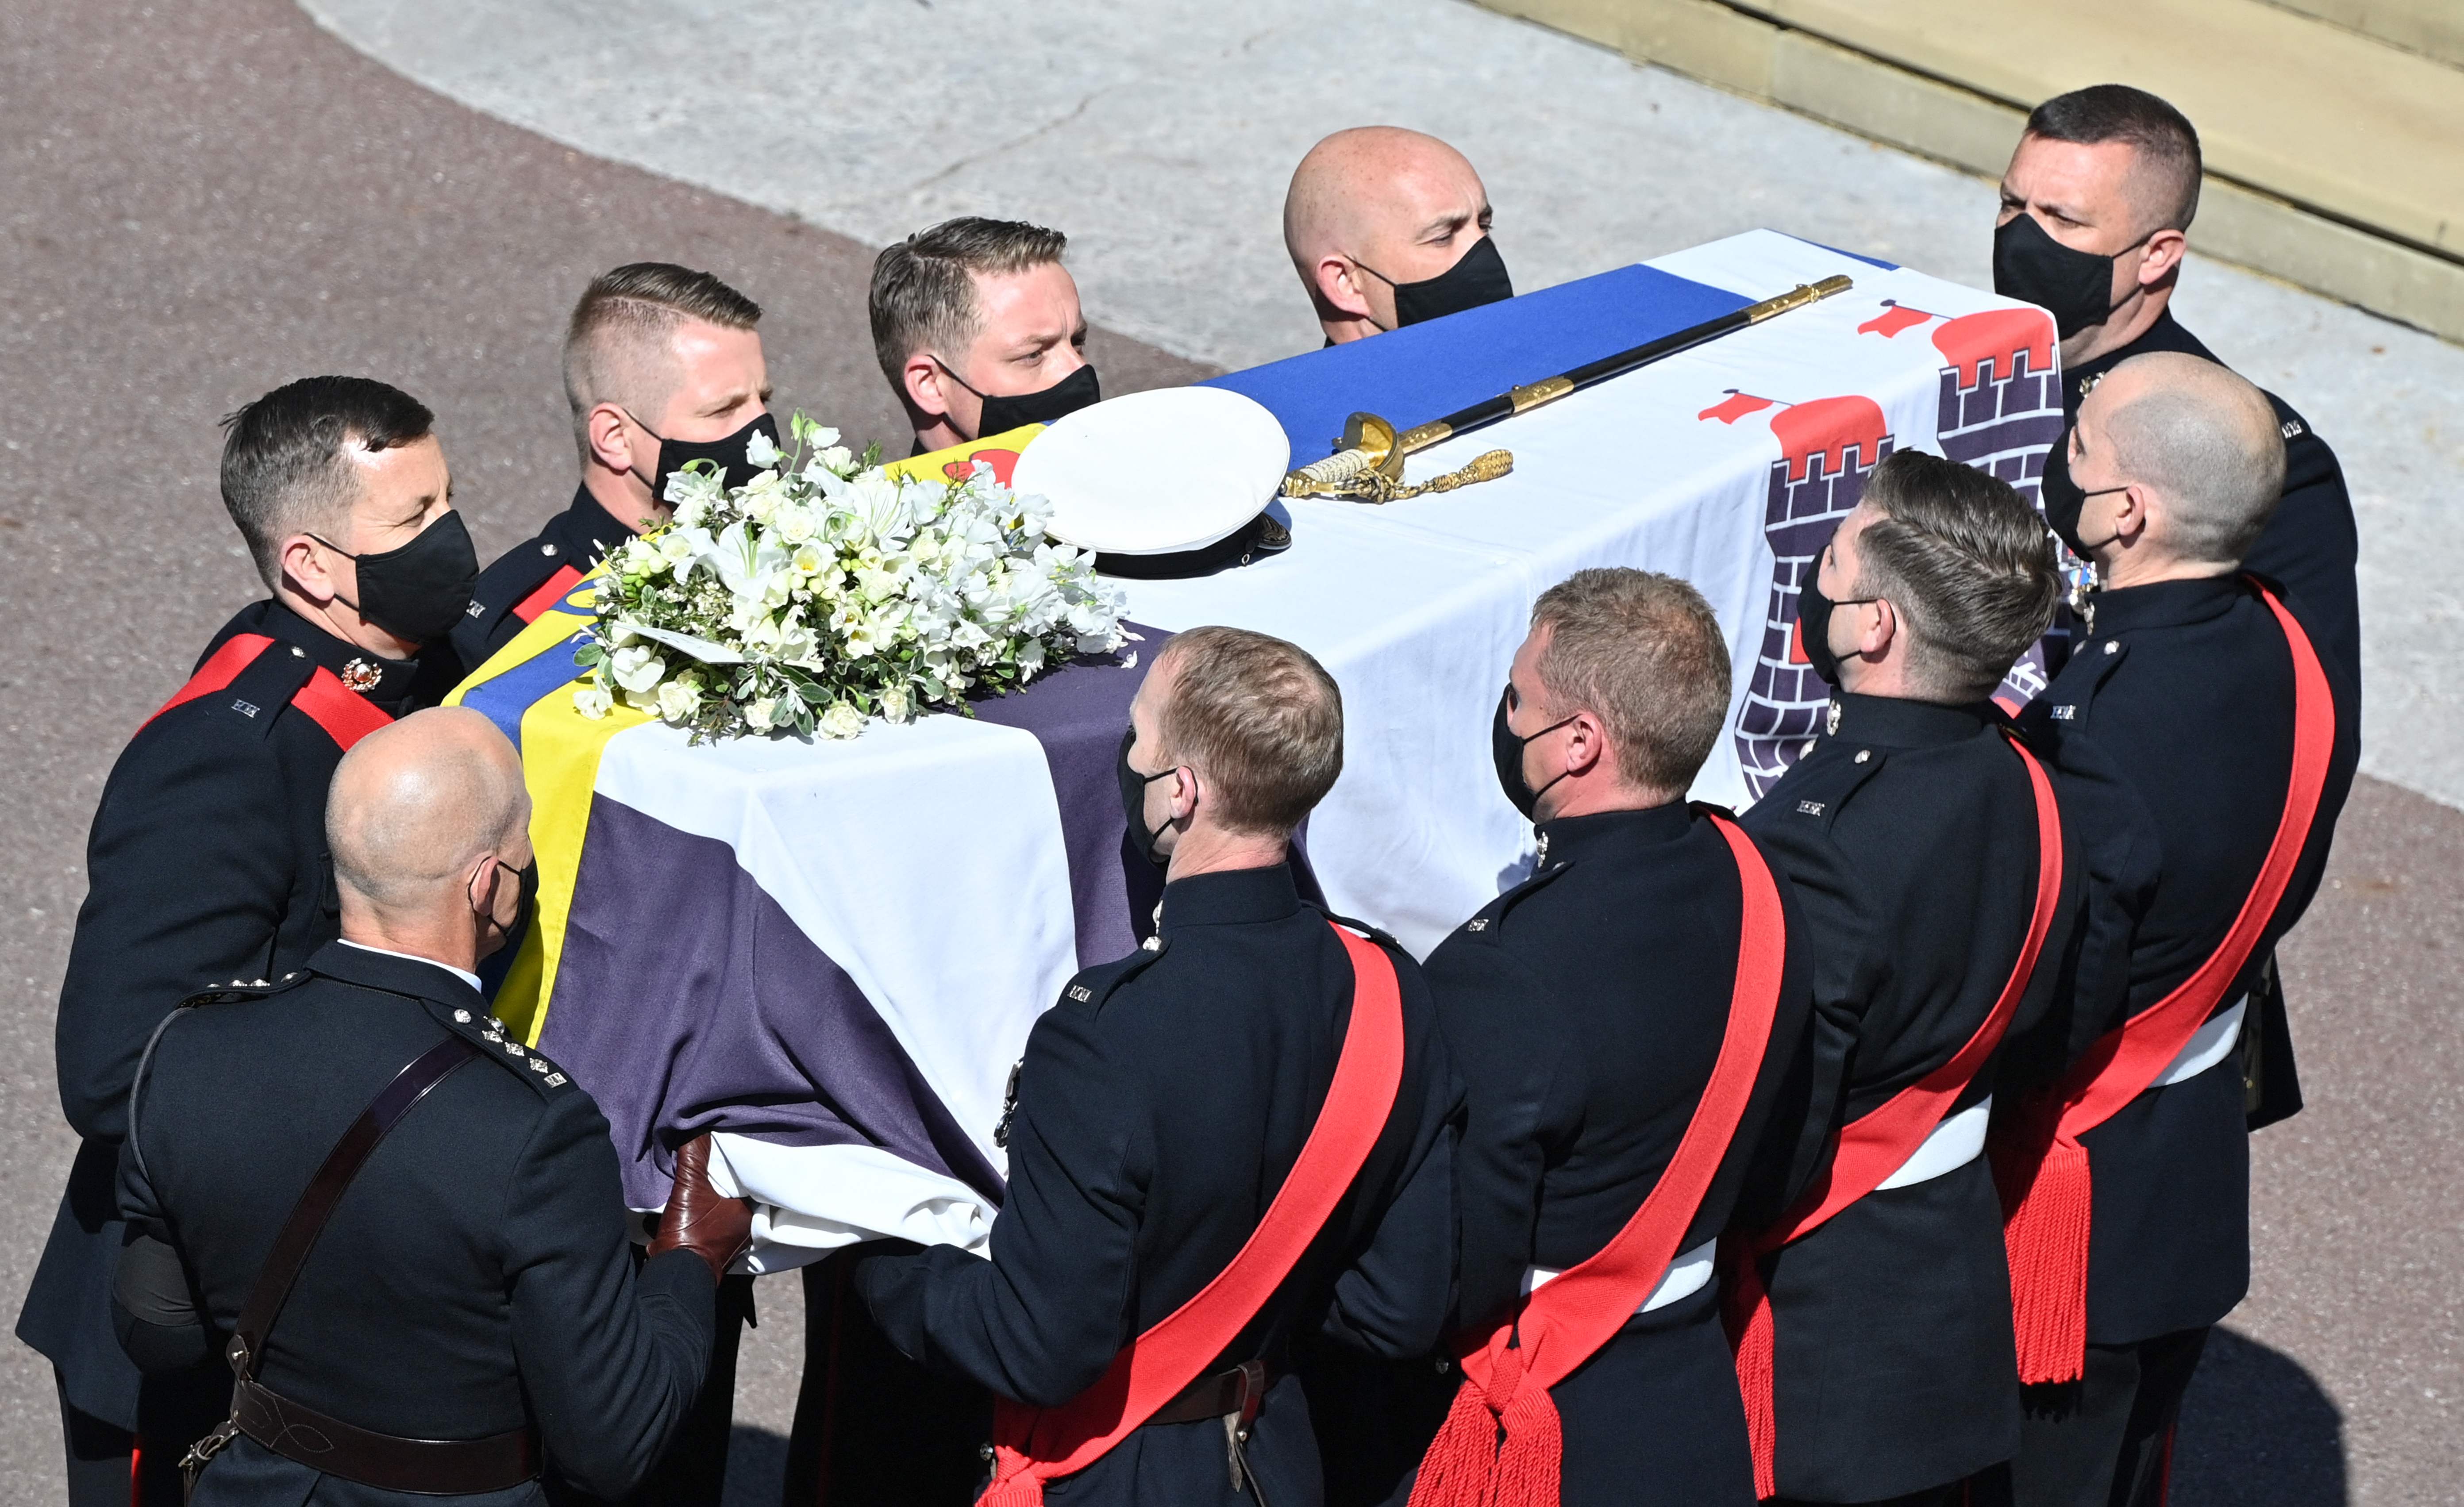 Marines Reales llevan el ataúd a la Capilla de San Jorge para marcar el inicio del servicio fúnebre del príncipe Felipe, duque de Edimburgo, en el Castillo de Windsor, al oeste de Londres. (Foto Prensa Libre: AFP)